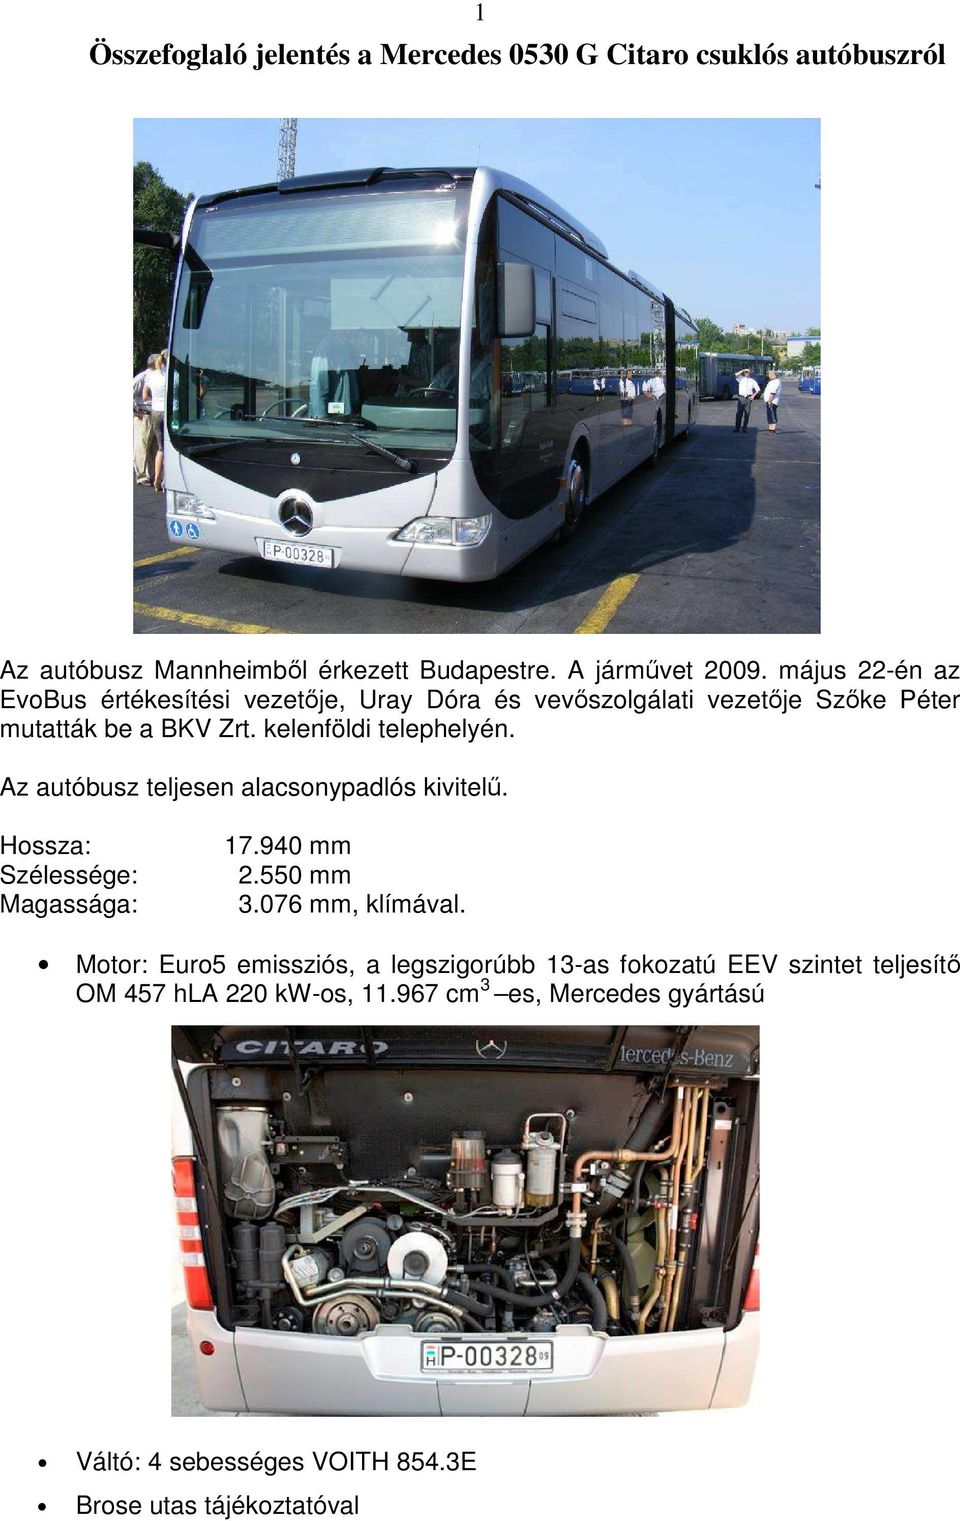 Az autóbusz teljesen alacsonypadlós kivitelő. Hossza: Szélessége: Magassága: 17.940 mm 2.550 mm 3.076 mm, klímával.